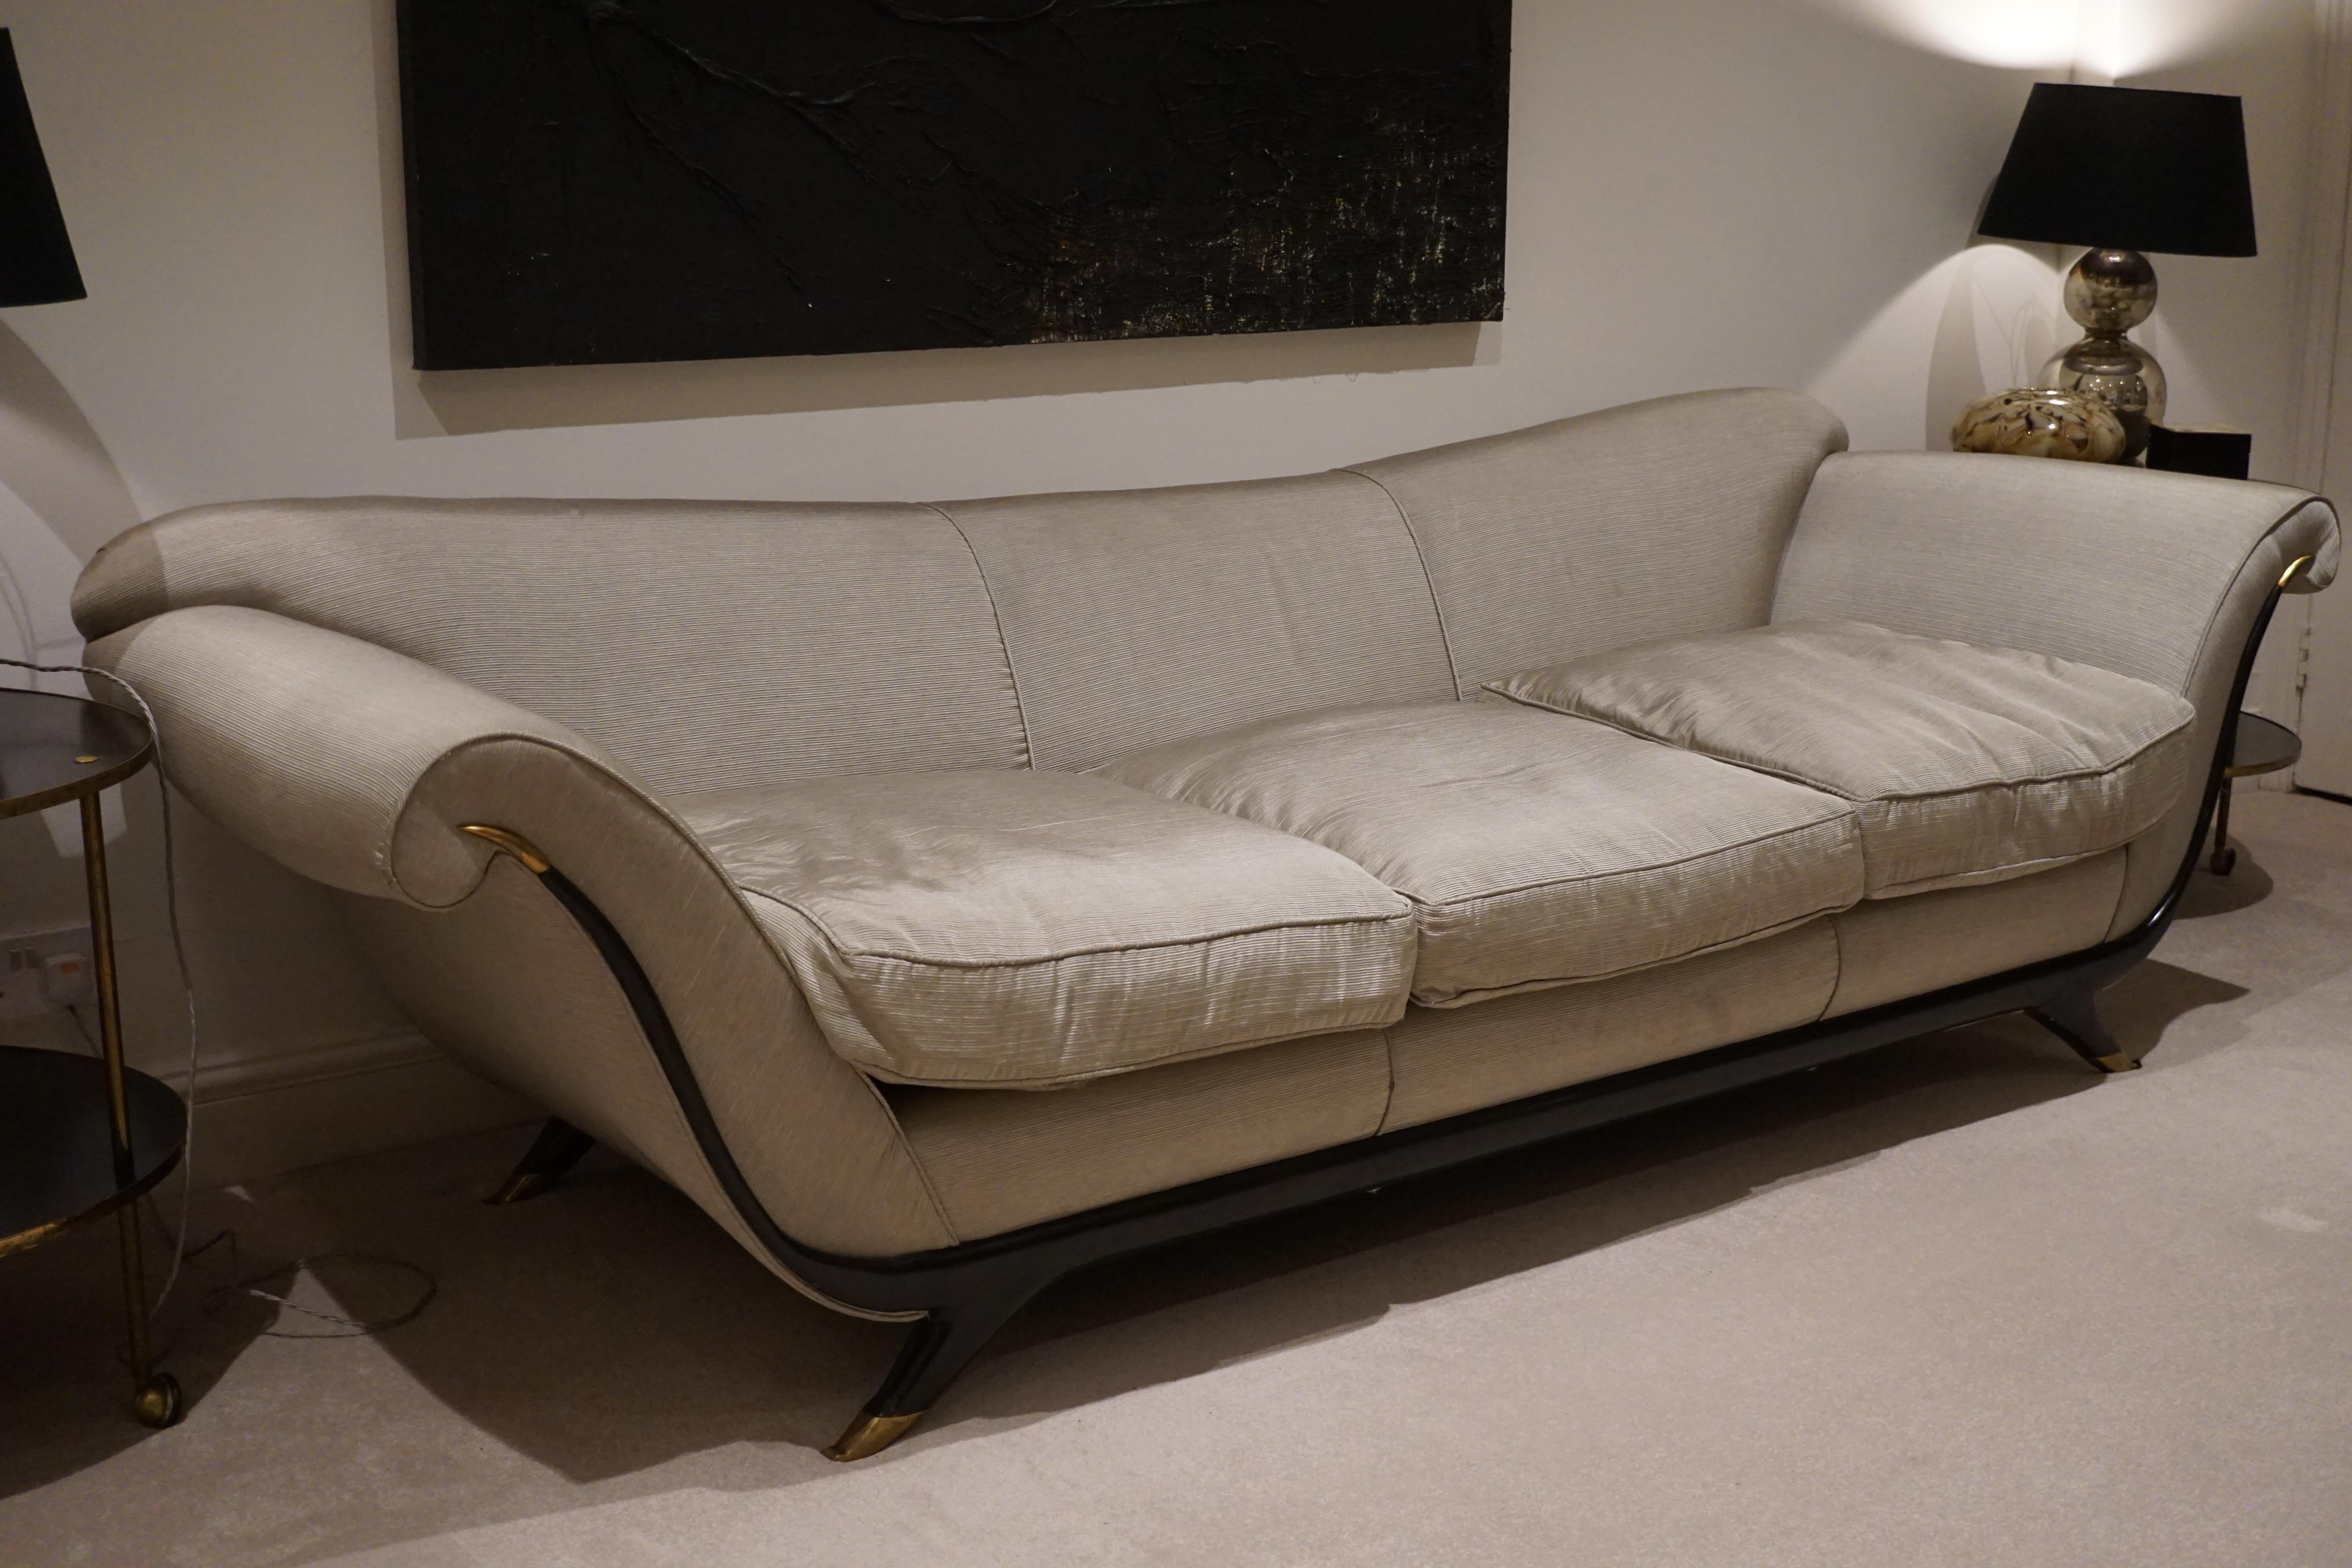 Il s'agit de l'un des canapés les plus remarquables d'Ulrichs.
Ce canapé fait partie de la collection personnelle de meubles du milieu du XXe siècle de Joseph Stedgui, qui a été exposée à la foire des antiquités de Londres en 2007.  puis acheté par